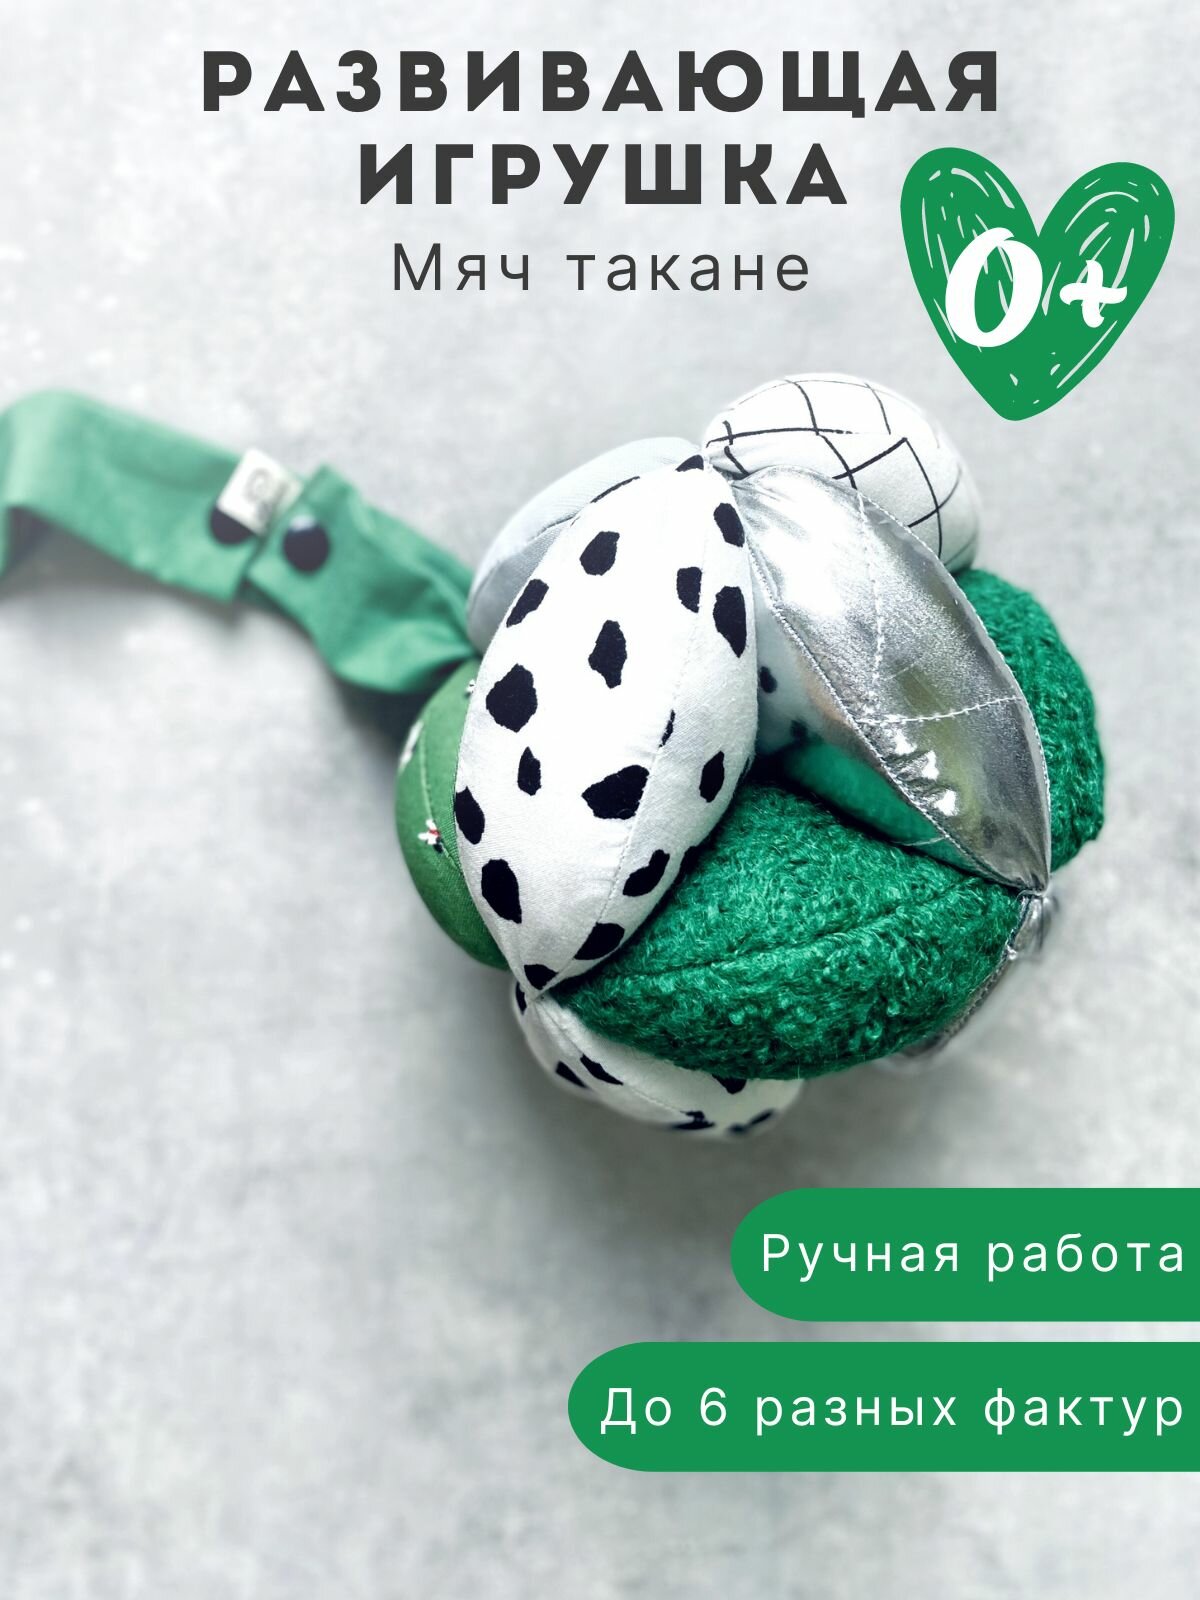 Детская развивающая игрушка мяч Такане "Зелень" / мячик монтессори / погремушка puzzle ball для детей